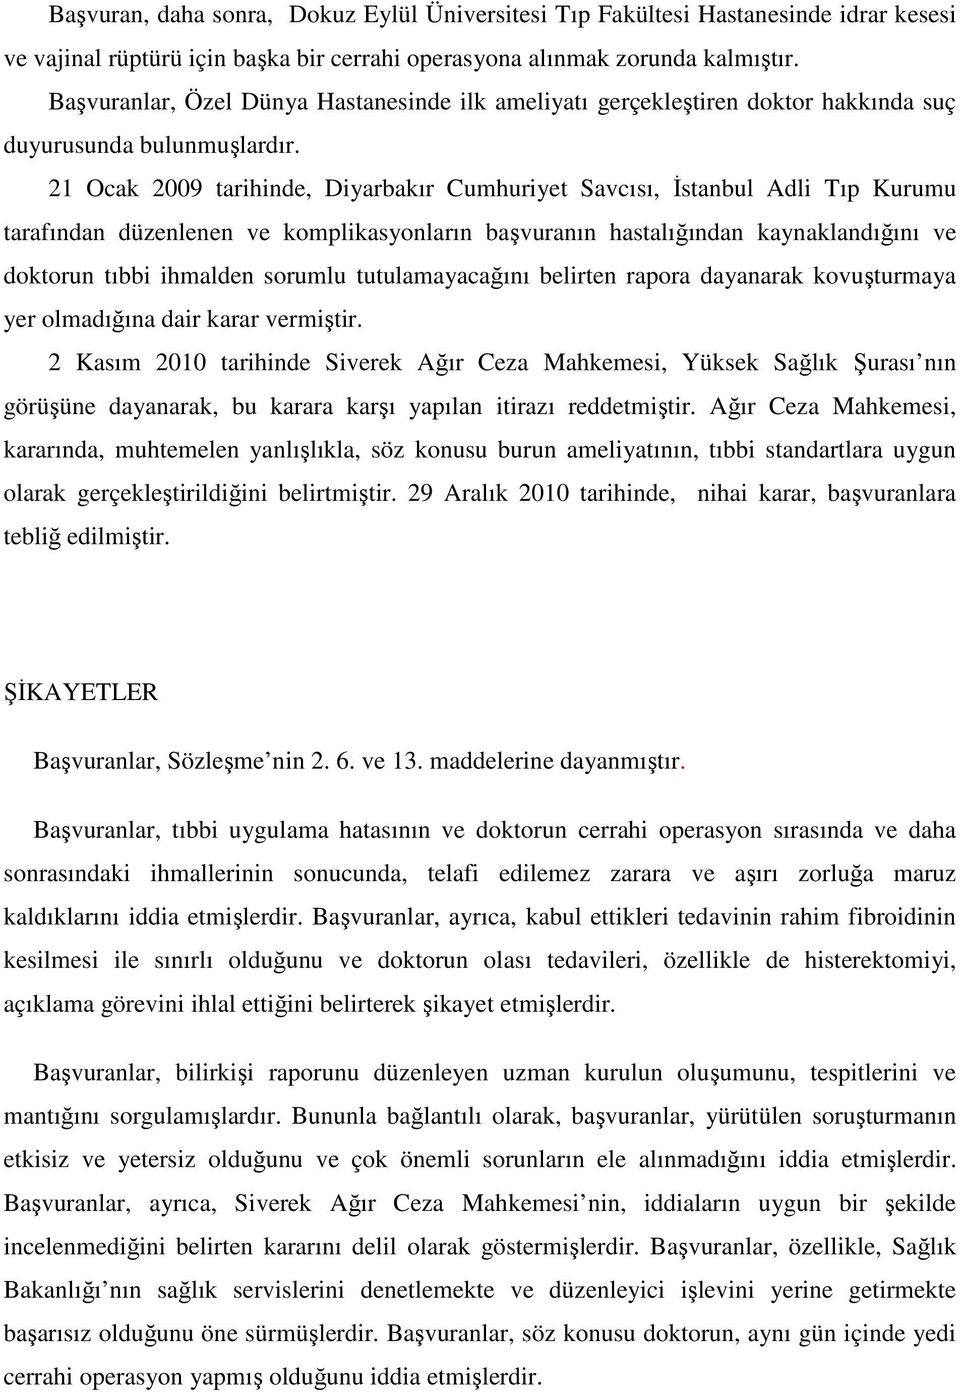 21 Ocak 2009 tarihinde, Diyarbakır Cumhuriyet Savcısı, Đstanbul Adli Tıp Kurumu tarafından düzenlenen ve komplikasyonların başvuranın hastalığından kaynaklandığını ve doktorun tıbbi ihmalden sorumlu